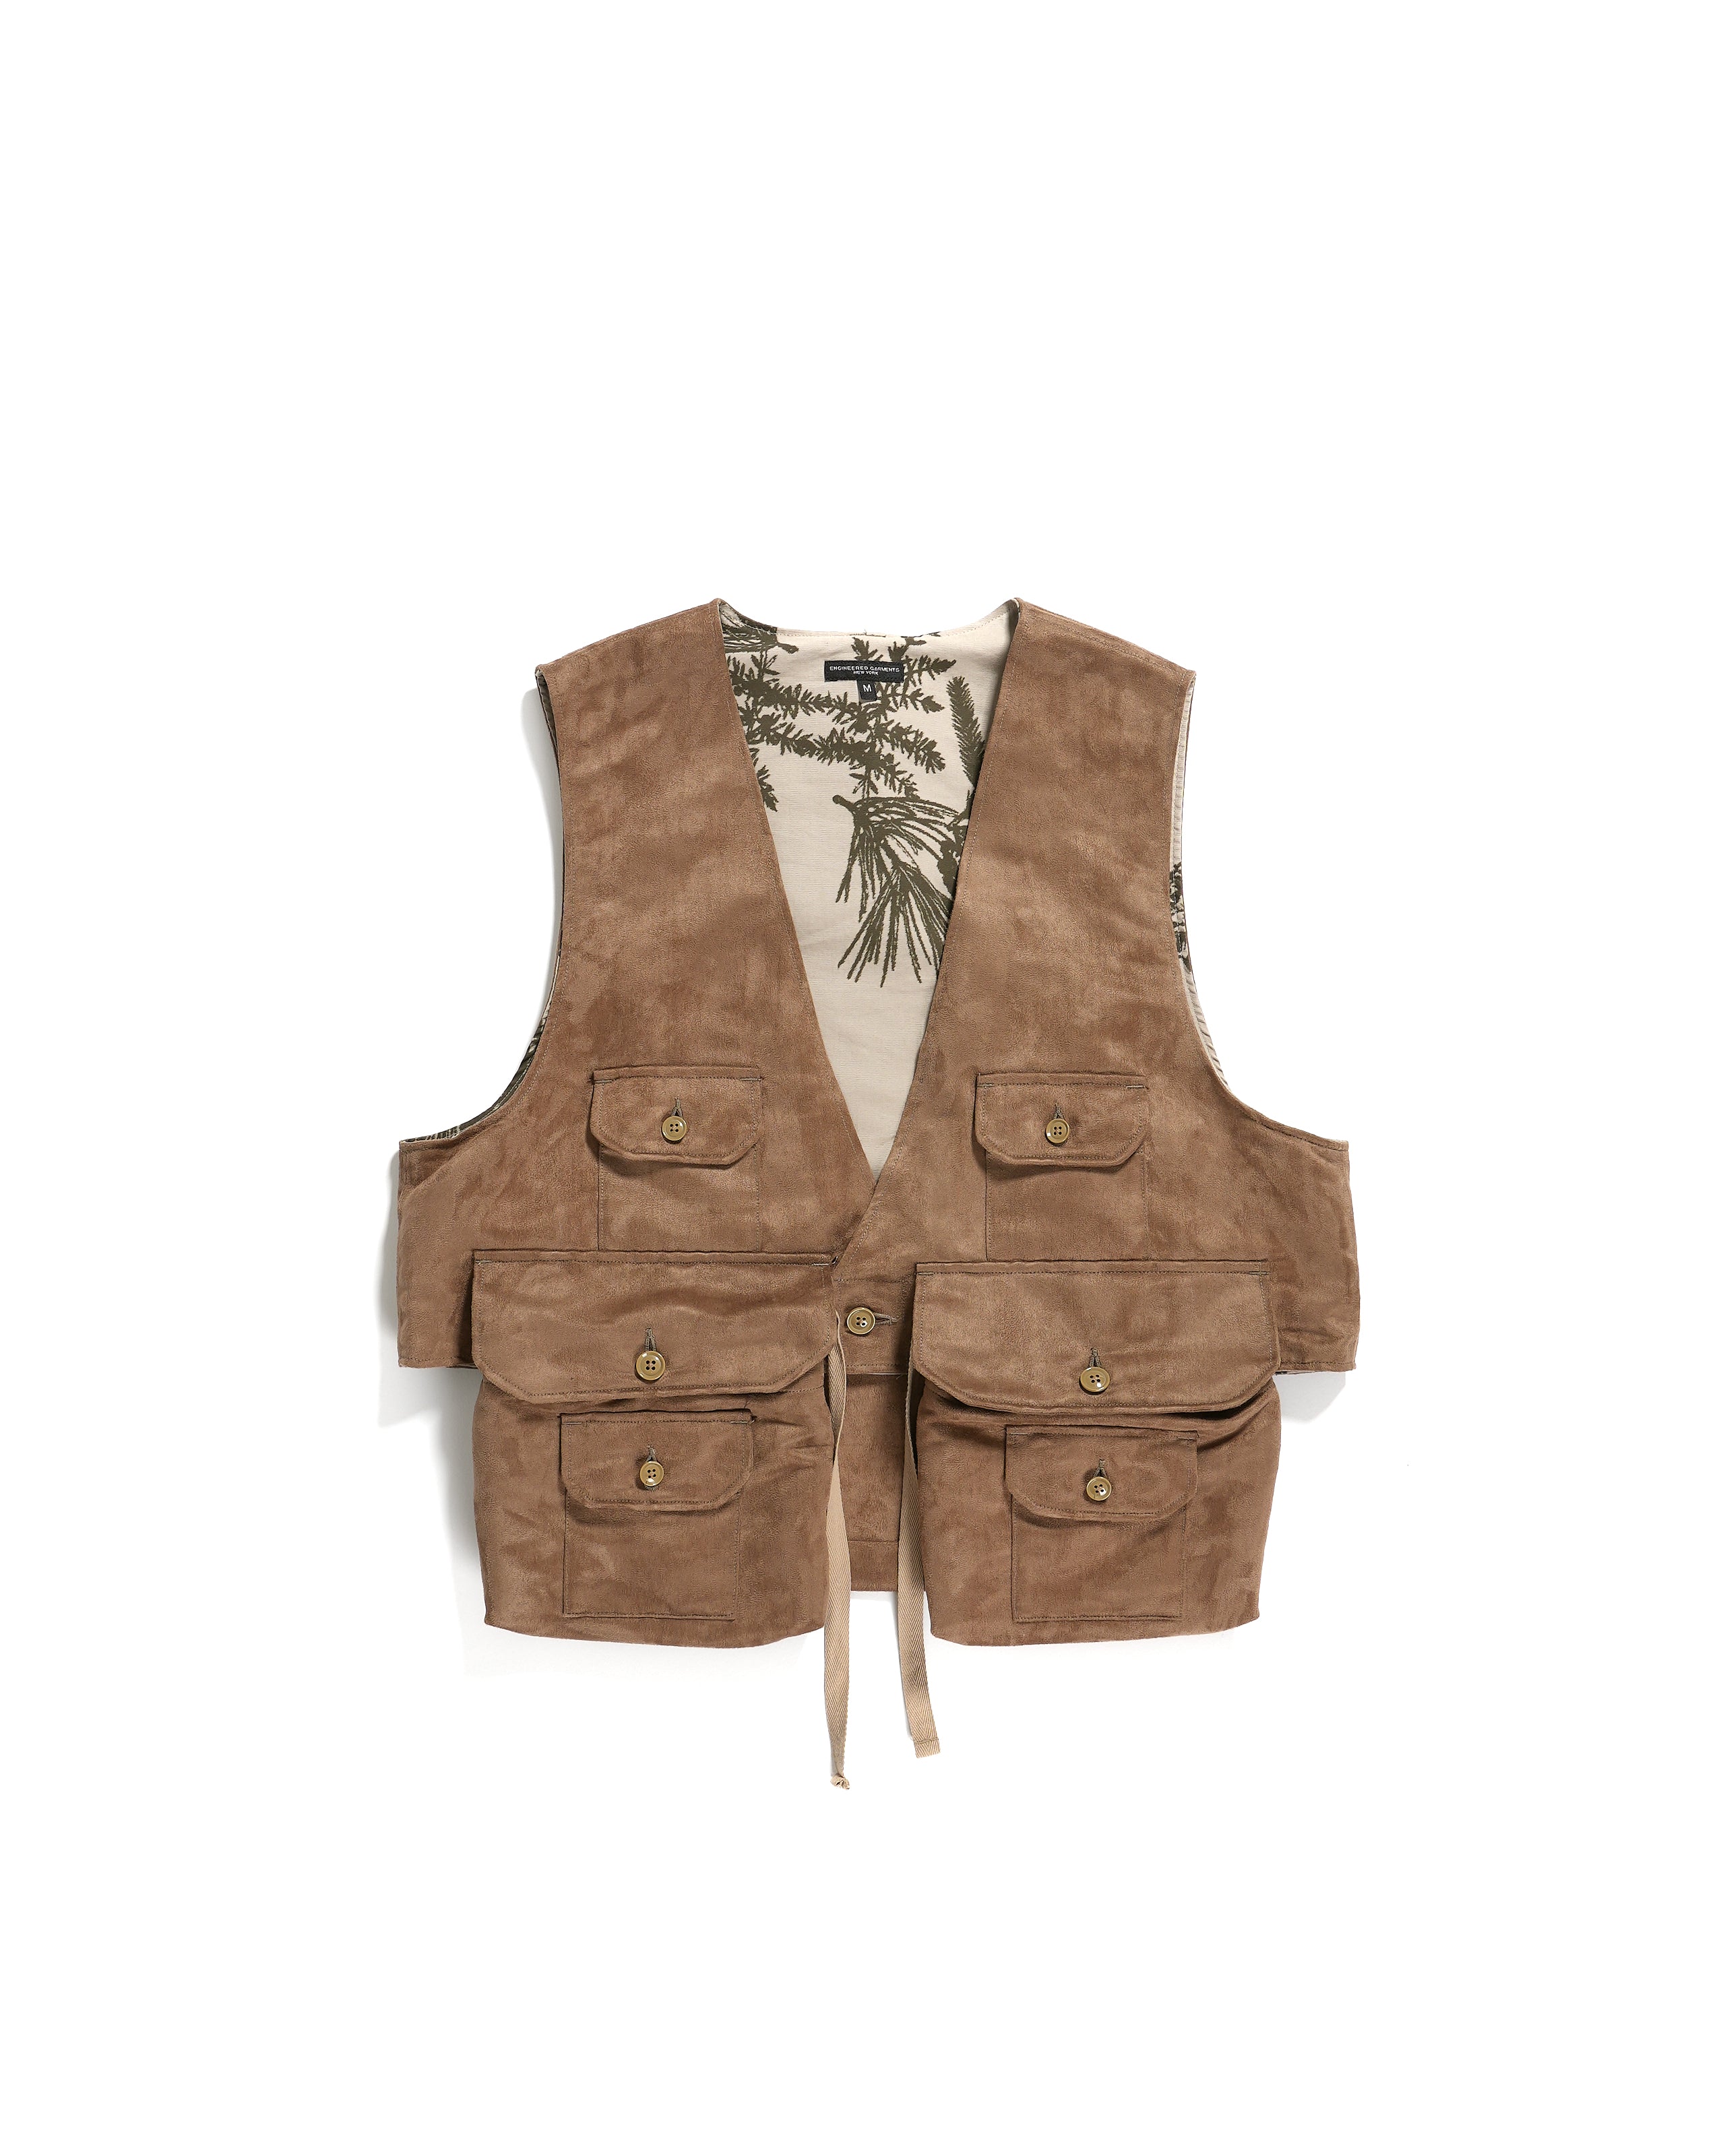 値引きする Engineered Garments 18-19aw fowl vest | www.qeyadah.com